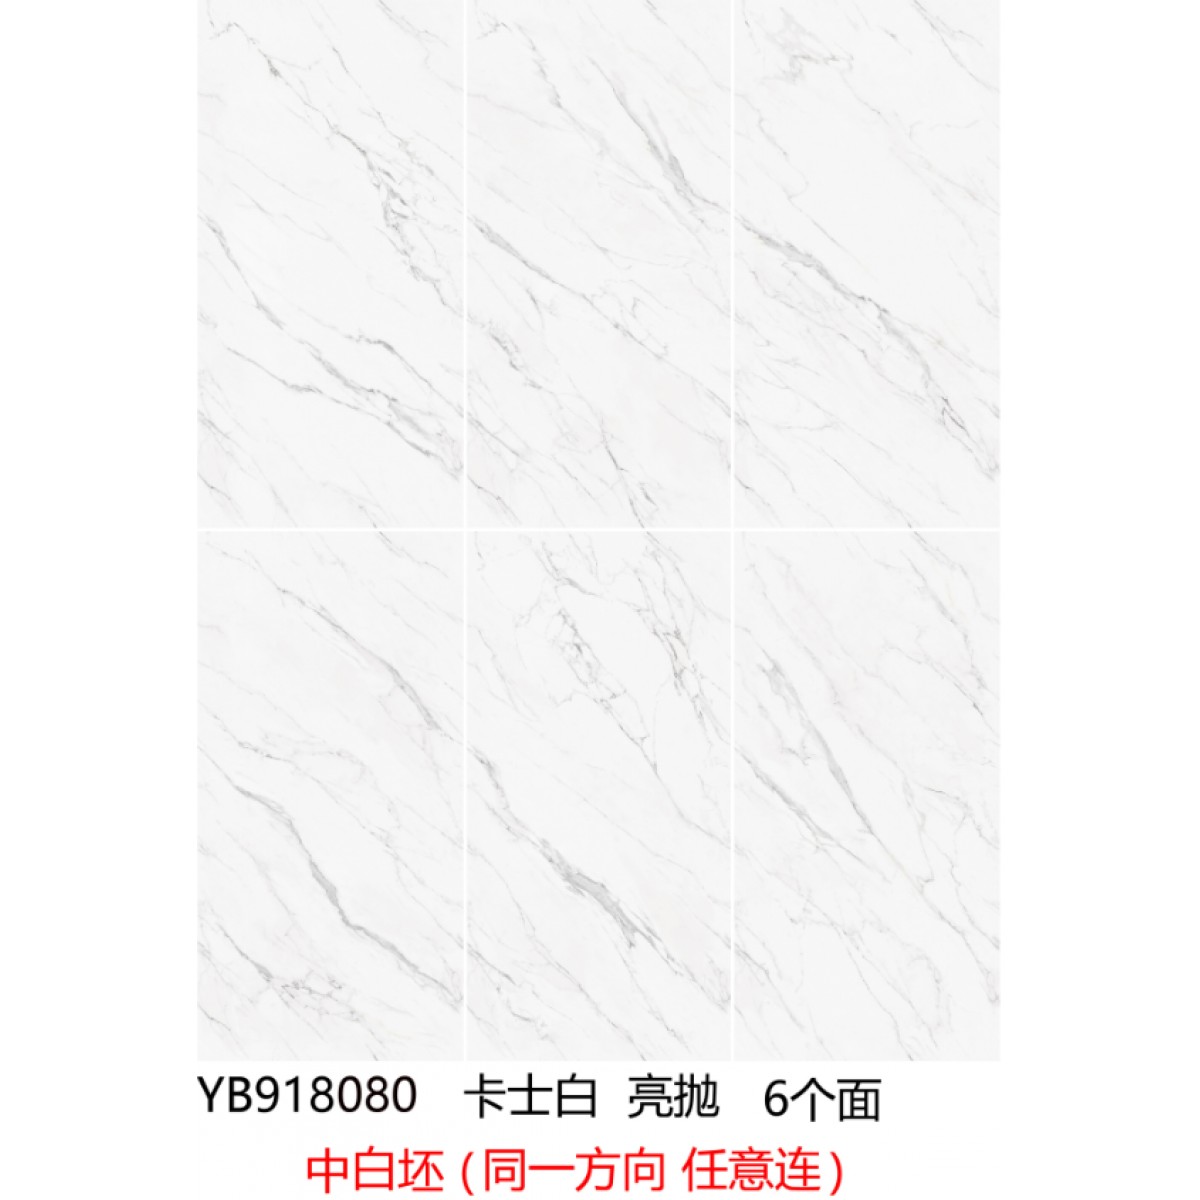 依诺岩板|瓷砖-卡士白YB918080